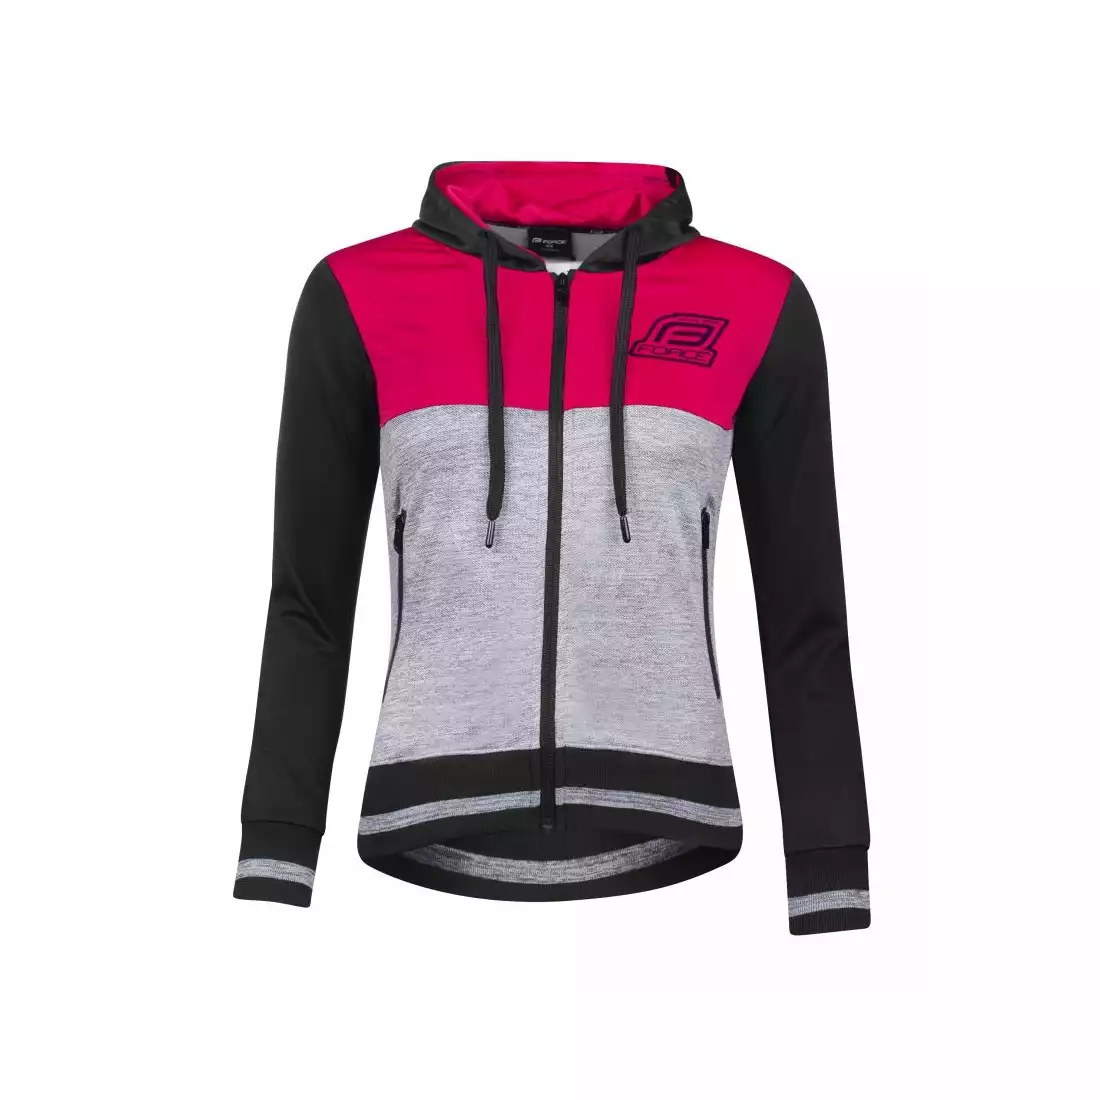 FORCE ADRIANA damska bluza sportowa, czarno-różowa